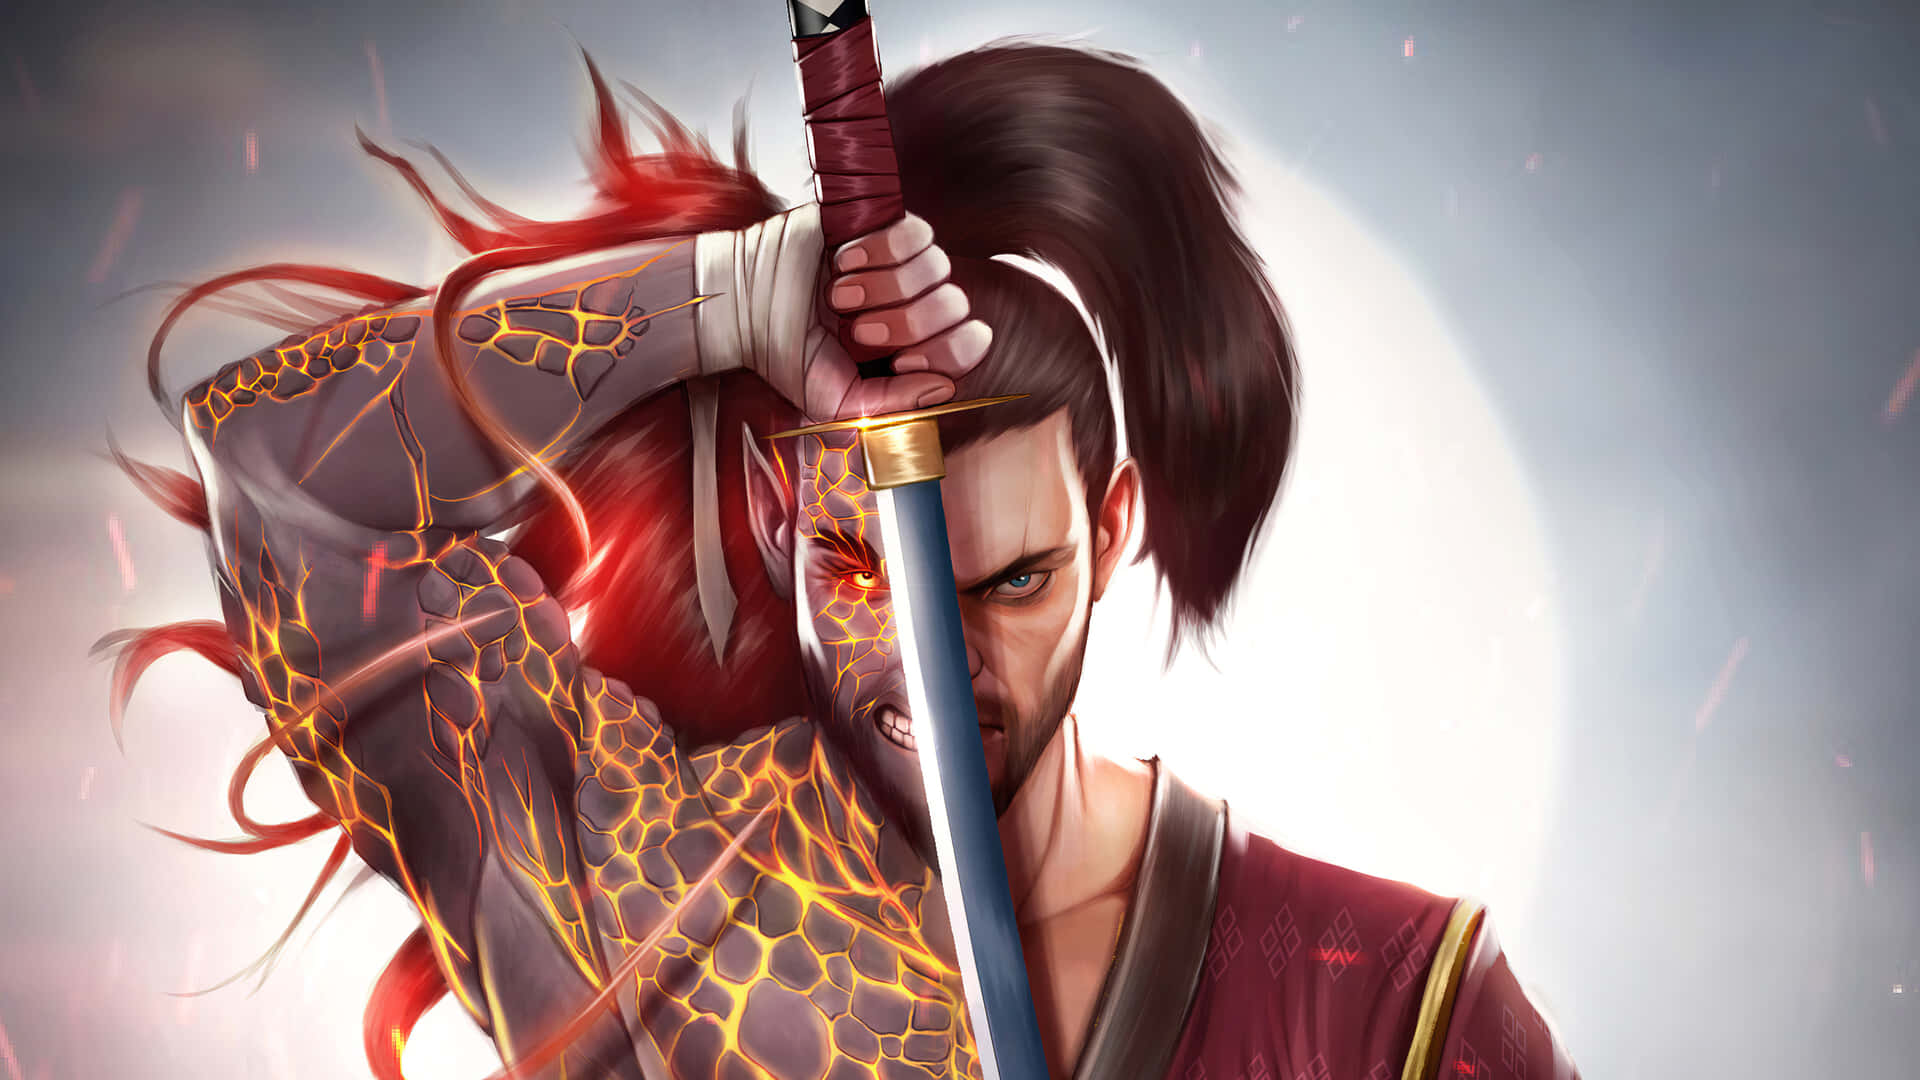 Intense Samurai Warrior In Battle Stance Background